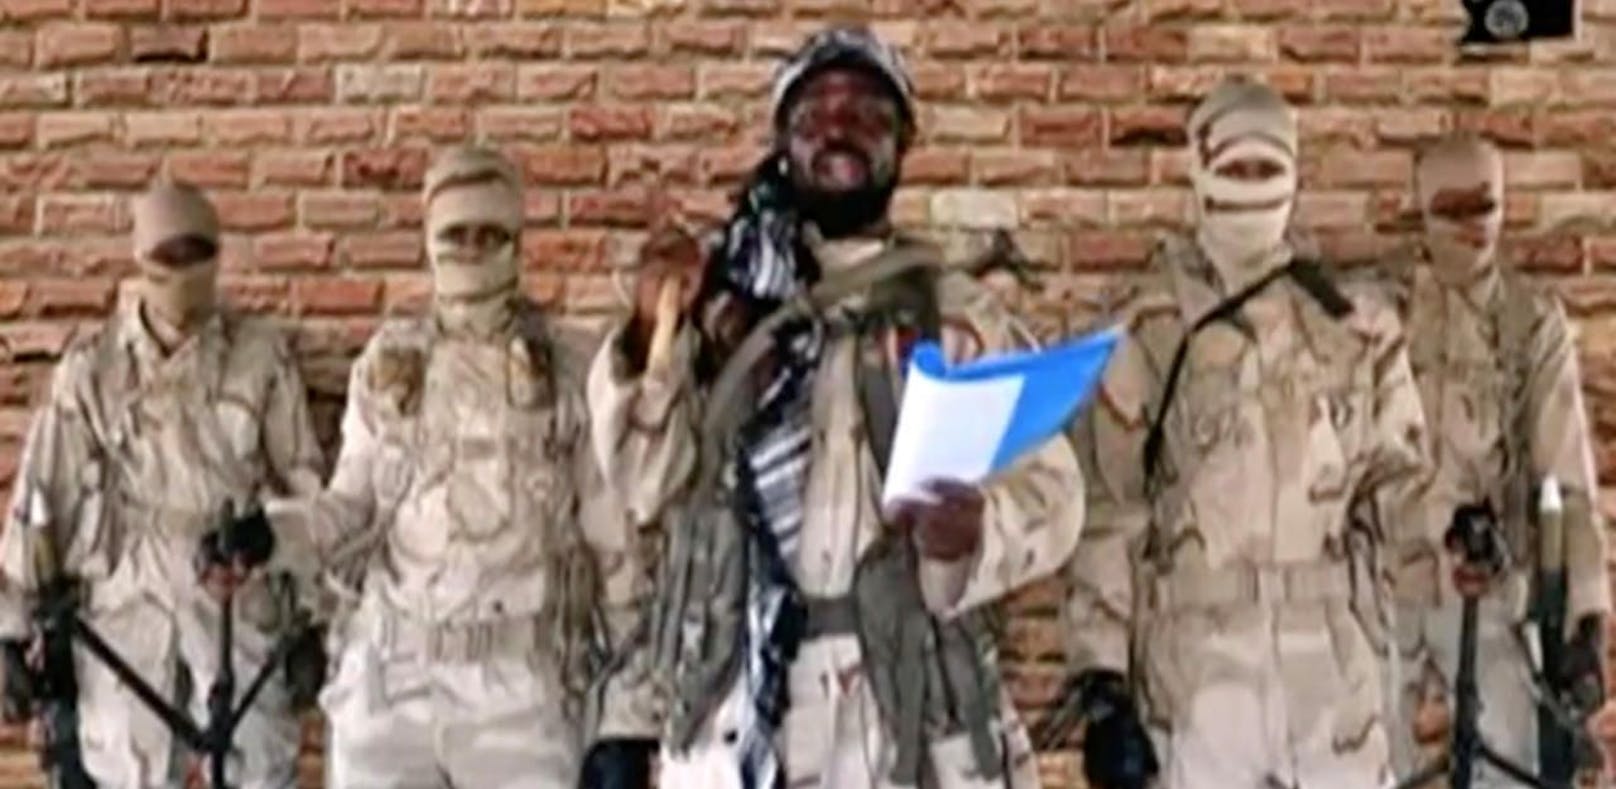 Bilder von Mitgliedern der Terrorsekte Boko Haram sind selten: Die Terroristen töten gezielt Journalisten und Fotografen.